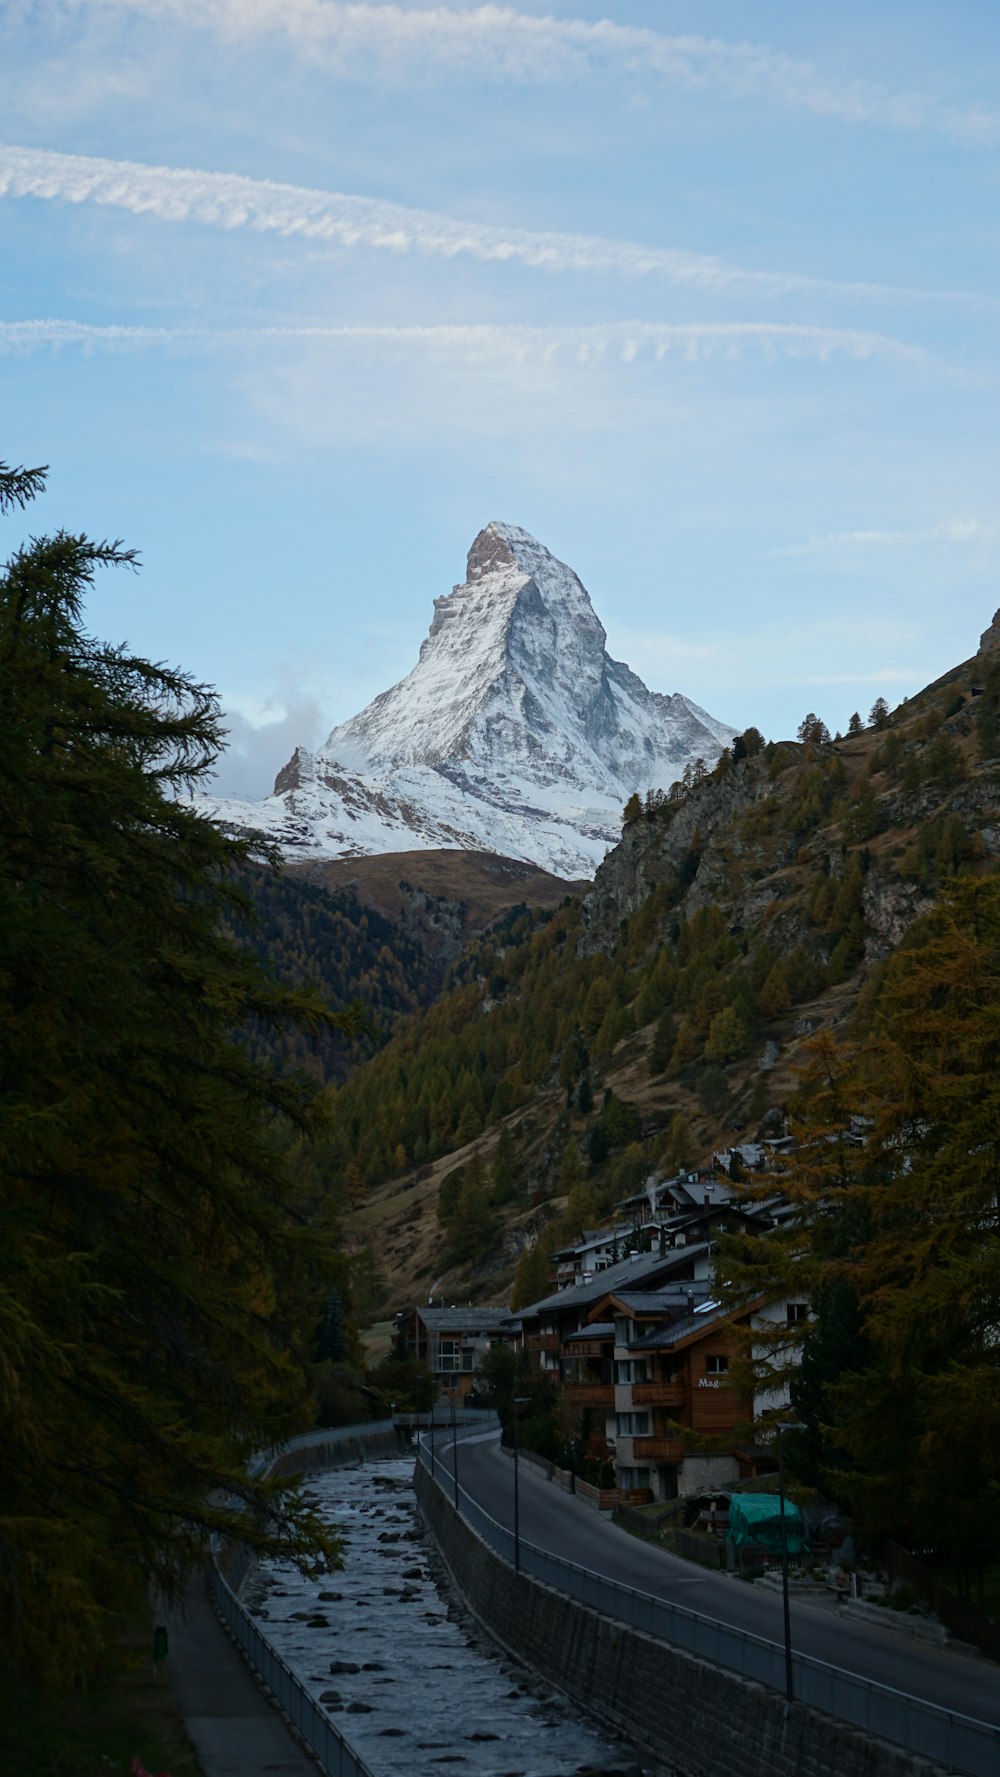 Matterhorn in Europe